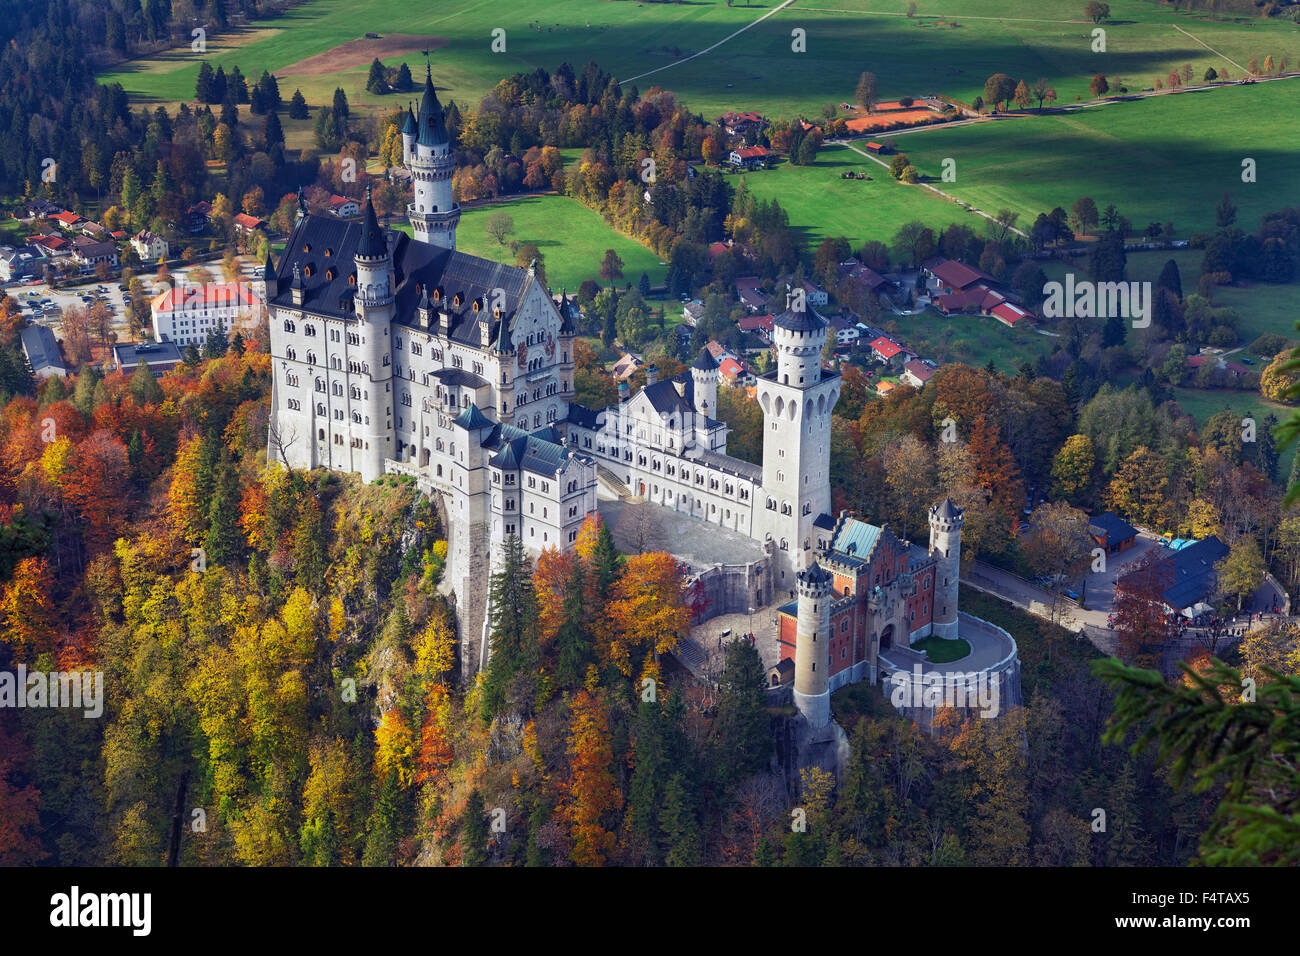 Neuschwanstein Castle, Germany. View of Neuschwanstein Castle during autumn day. Stock Photo